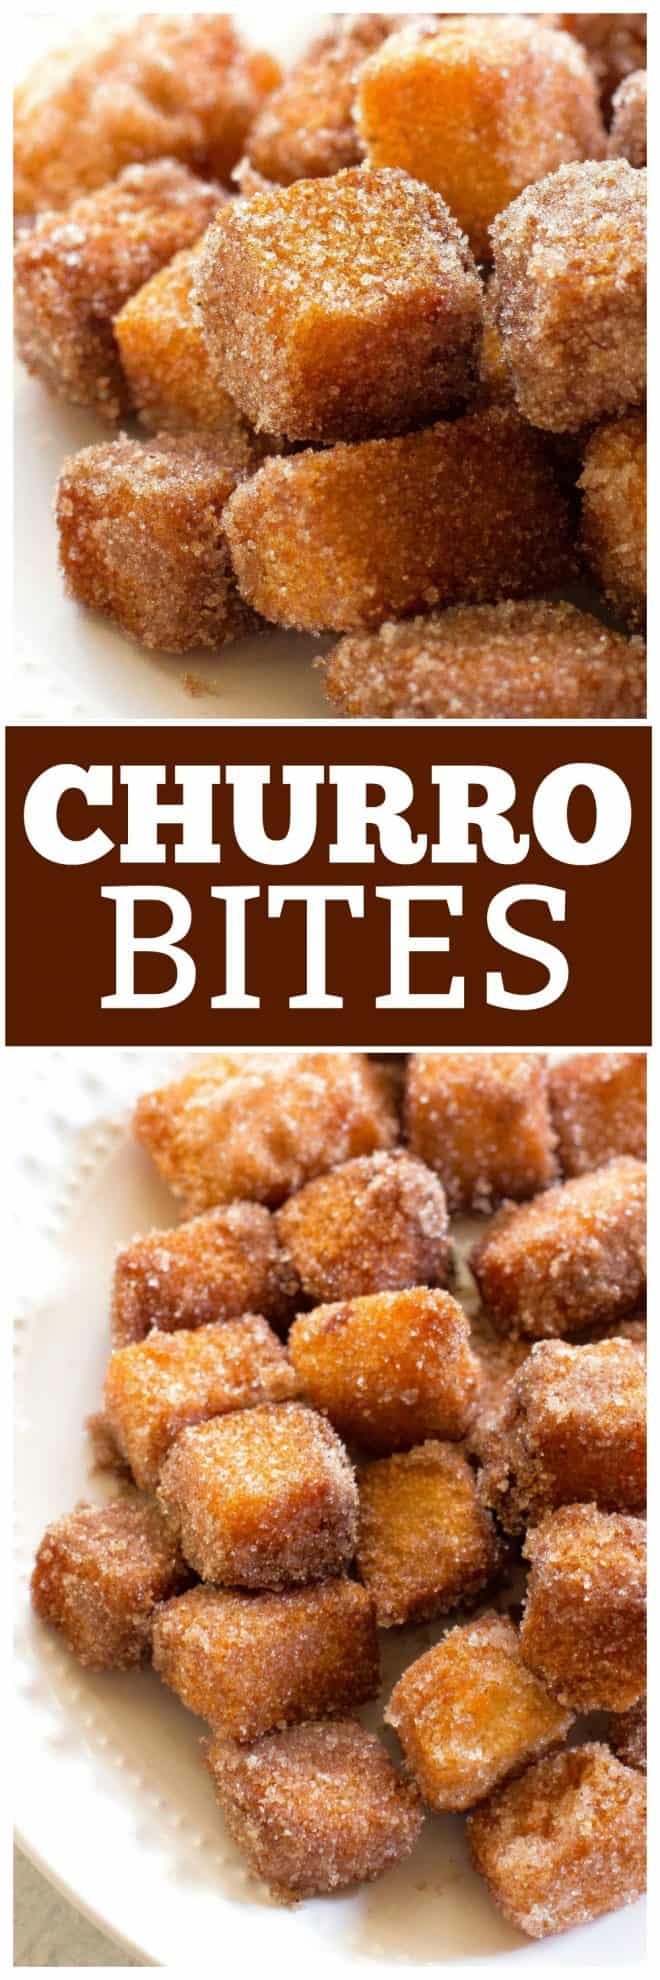 churro bites